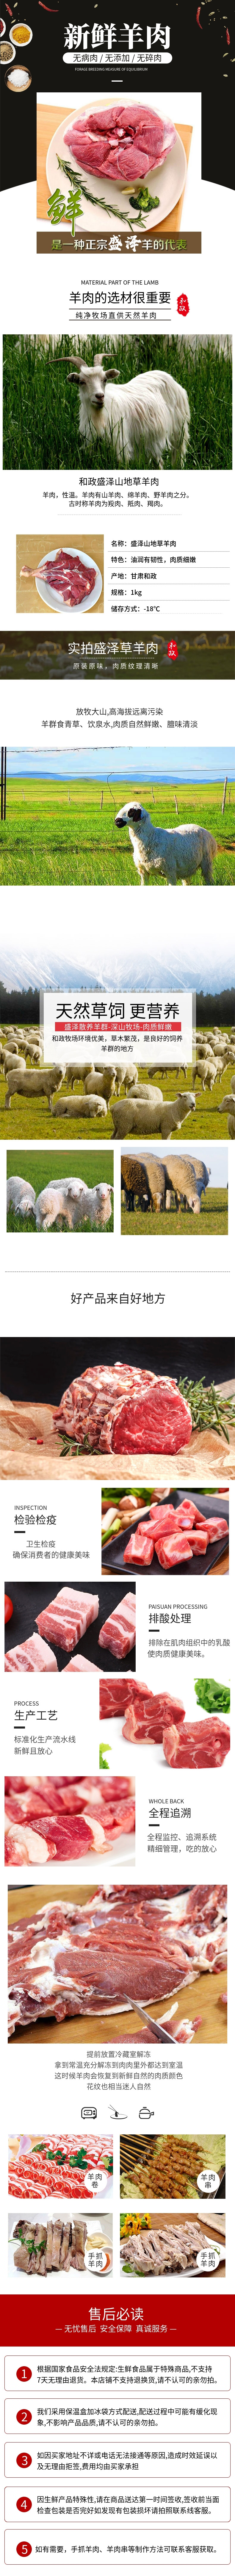 羊肉详情图.jpg